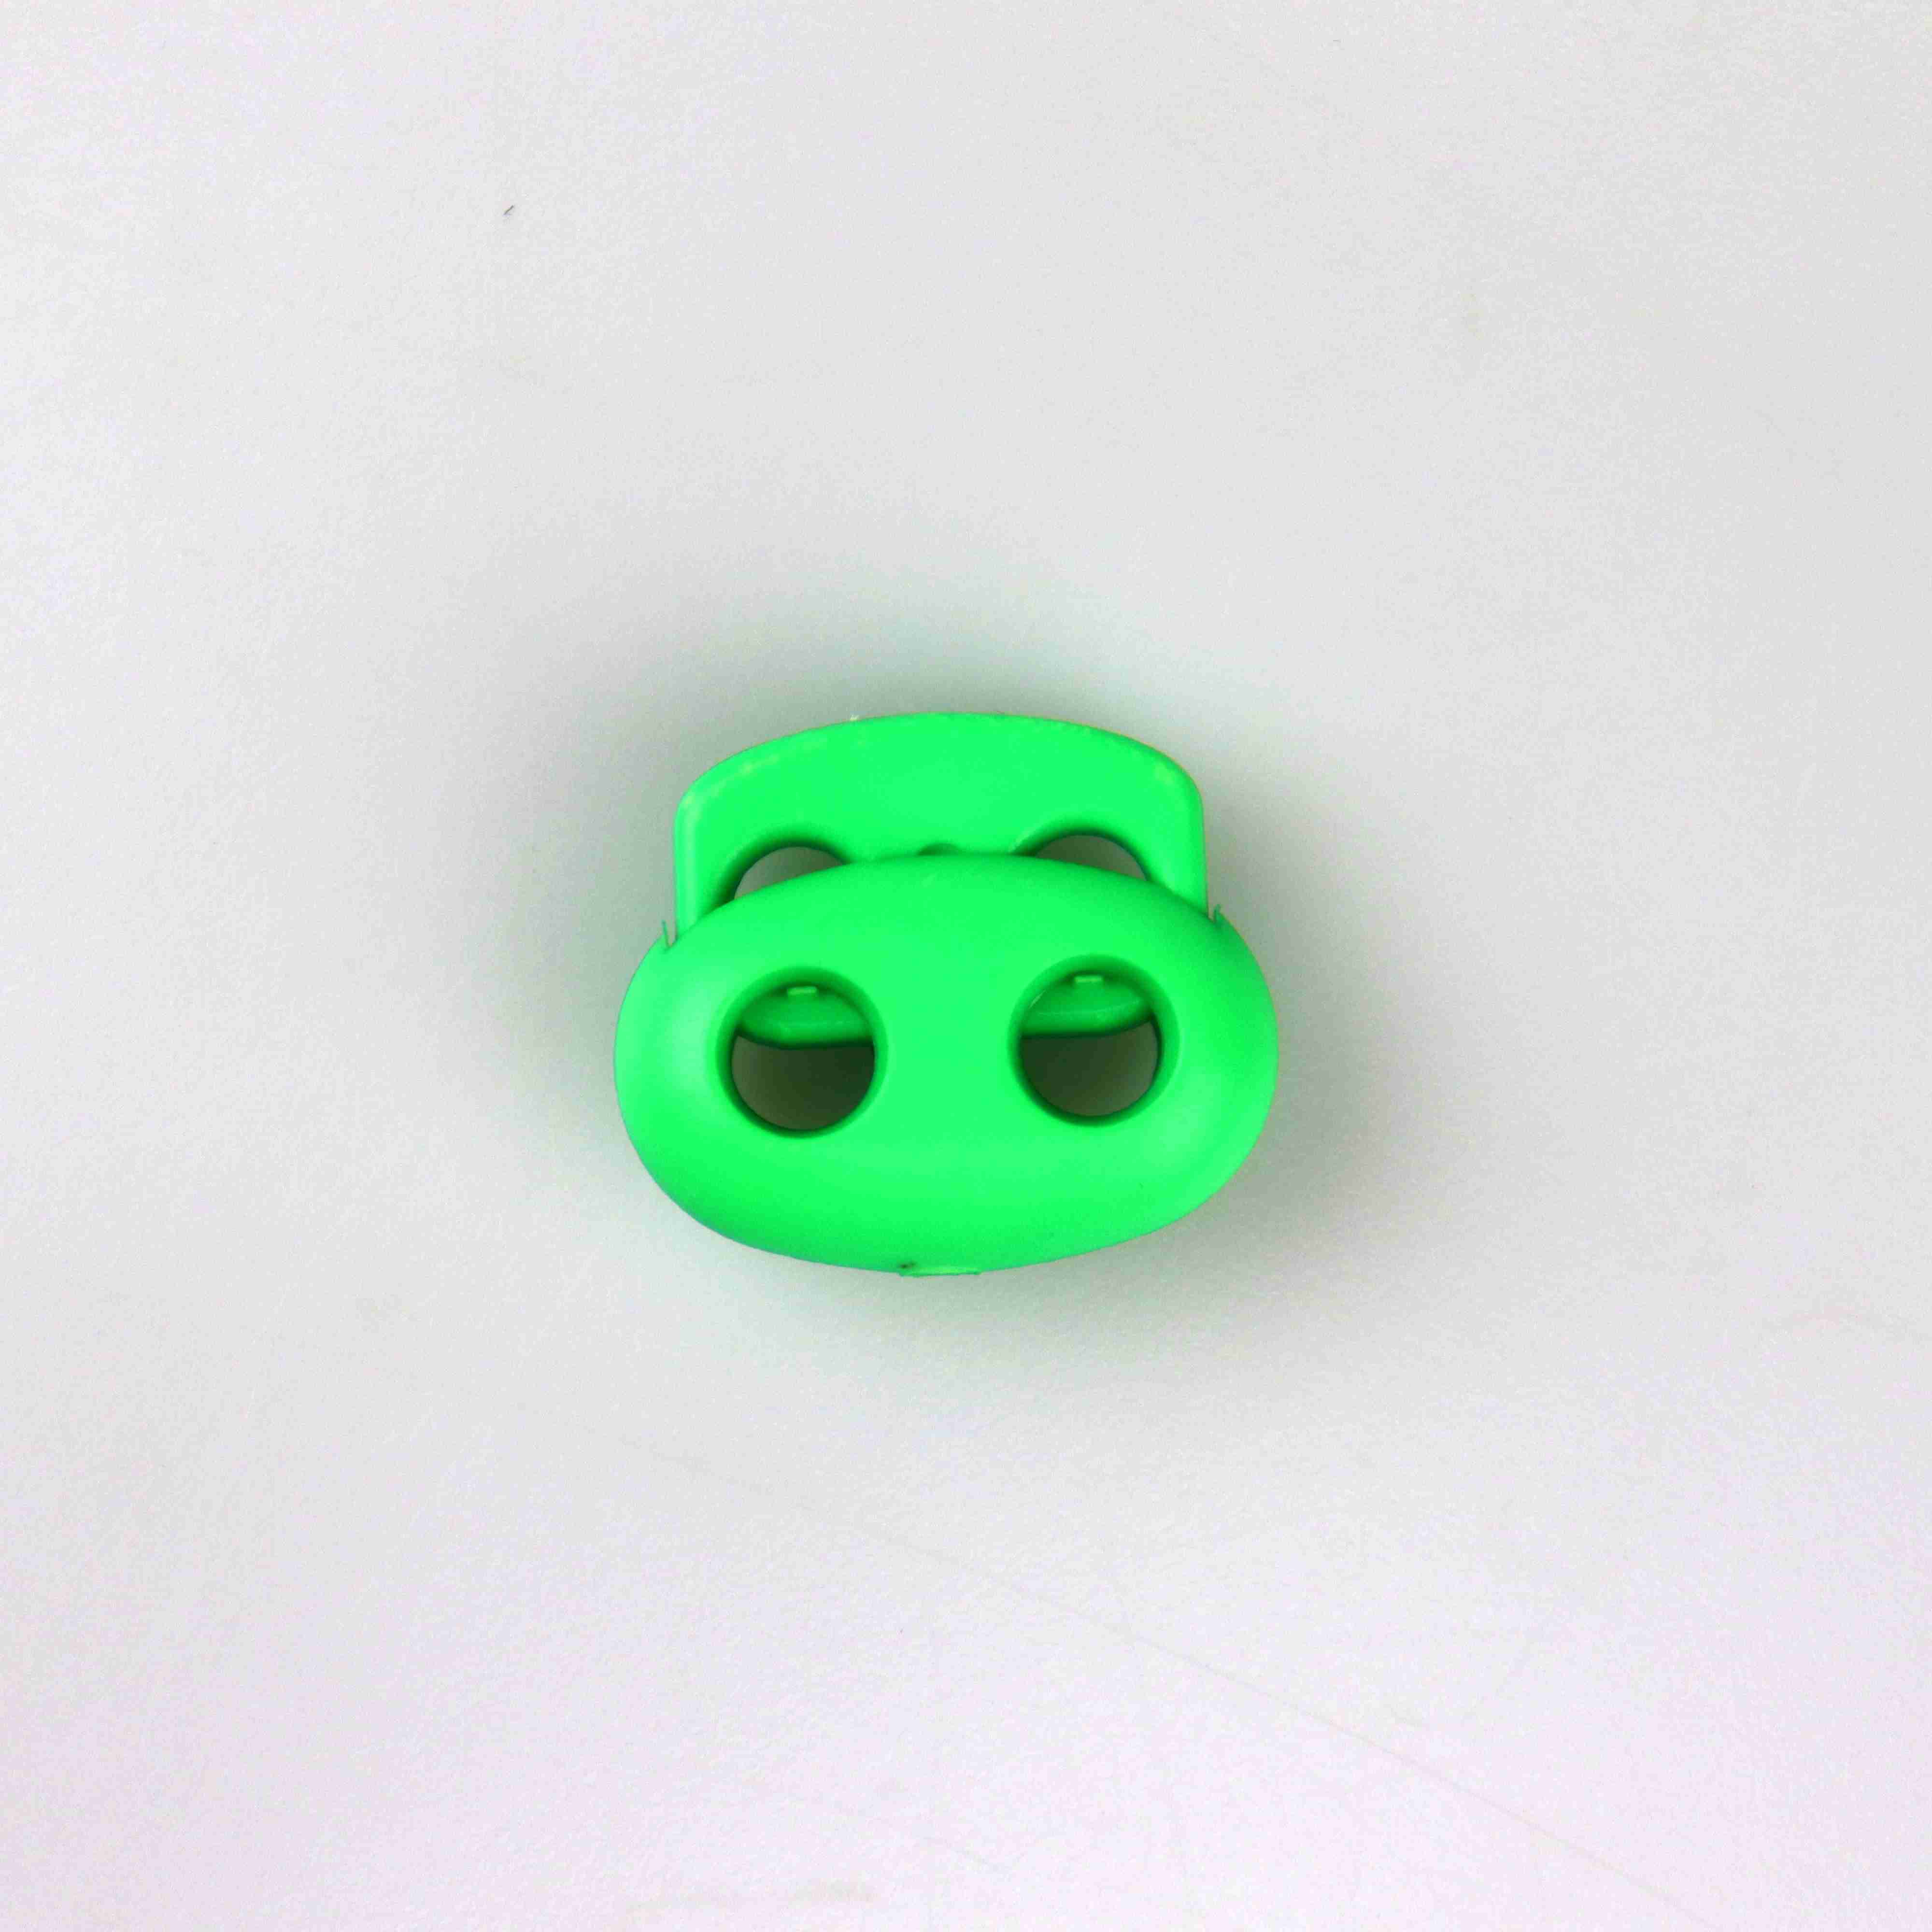 VTC Brzdička dvoušňůrová malá neon tmavší zelená